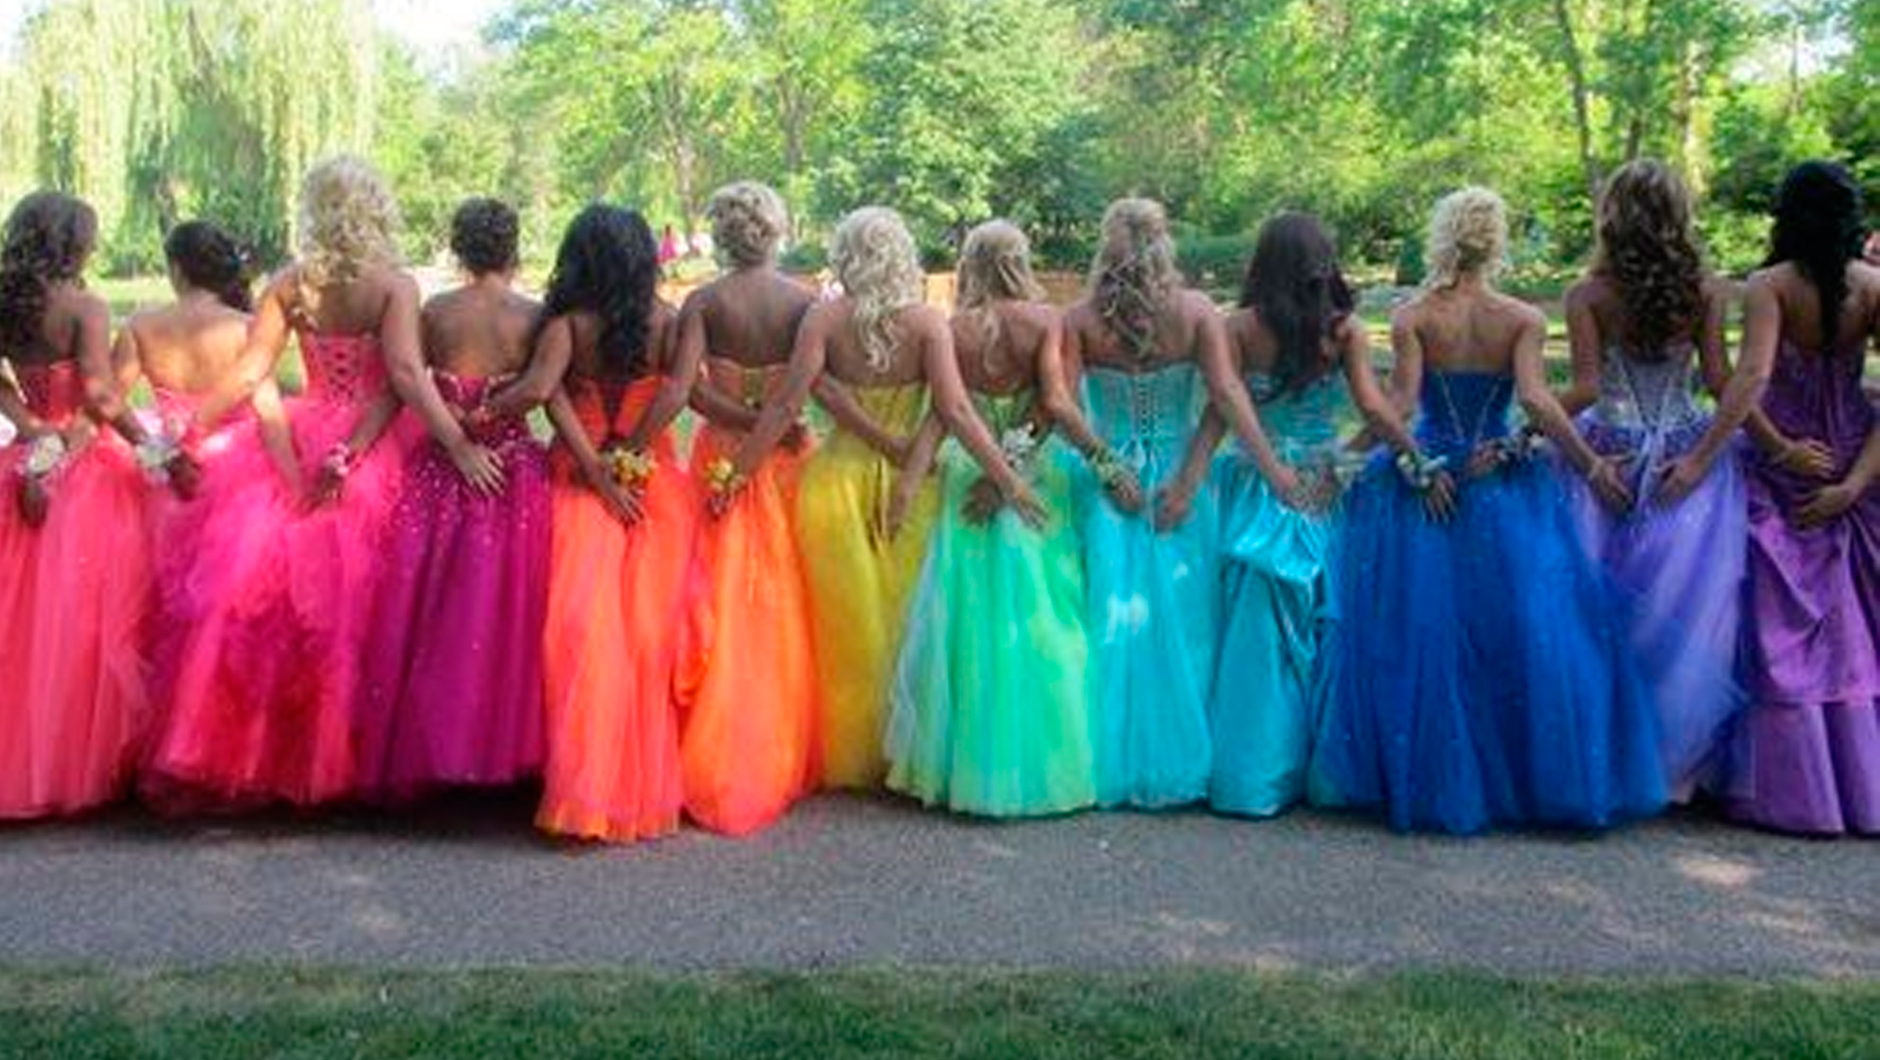 Почему бы не сделать радугу из разноцветных платьев? Само по себе позитивно смотрится